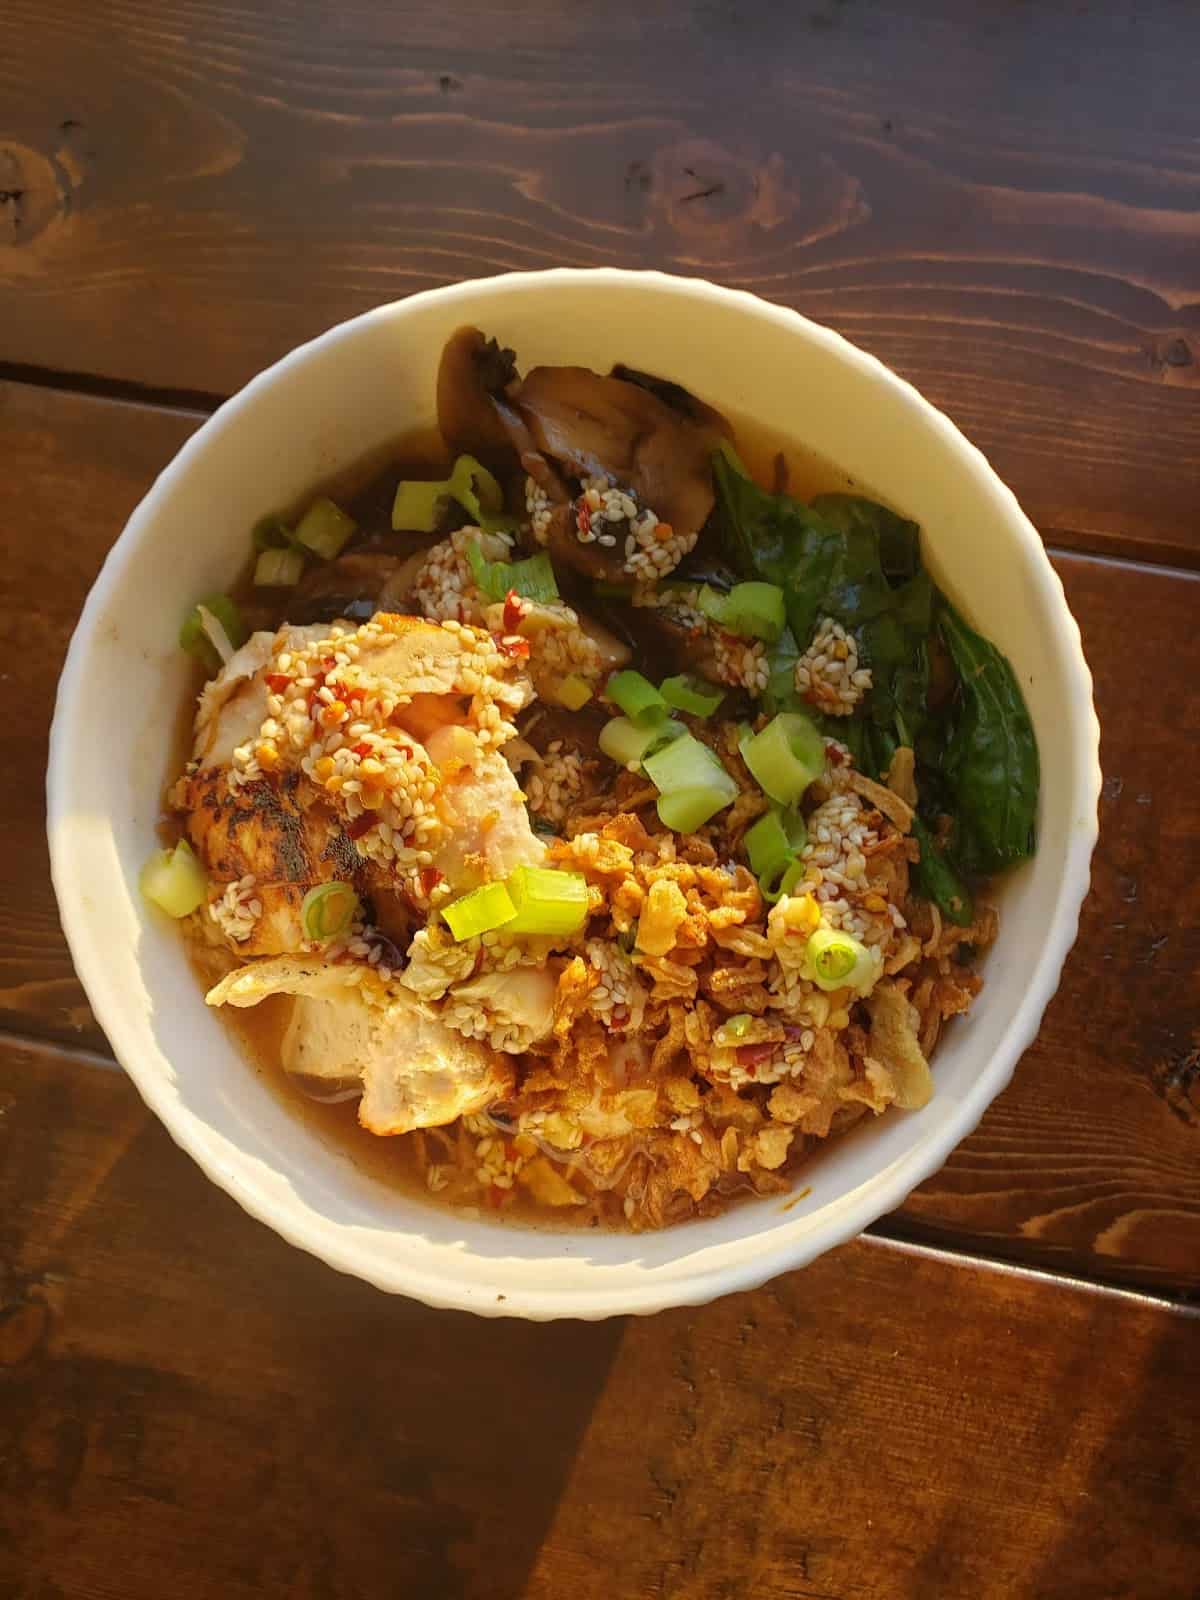 Chicken Ramen in a Shoyu-Style Broth with Mushrooms, Chili Garlic Oil & Crispy Onions